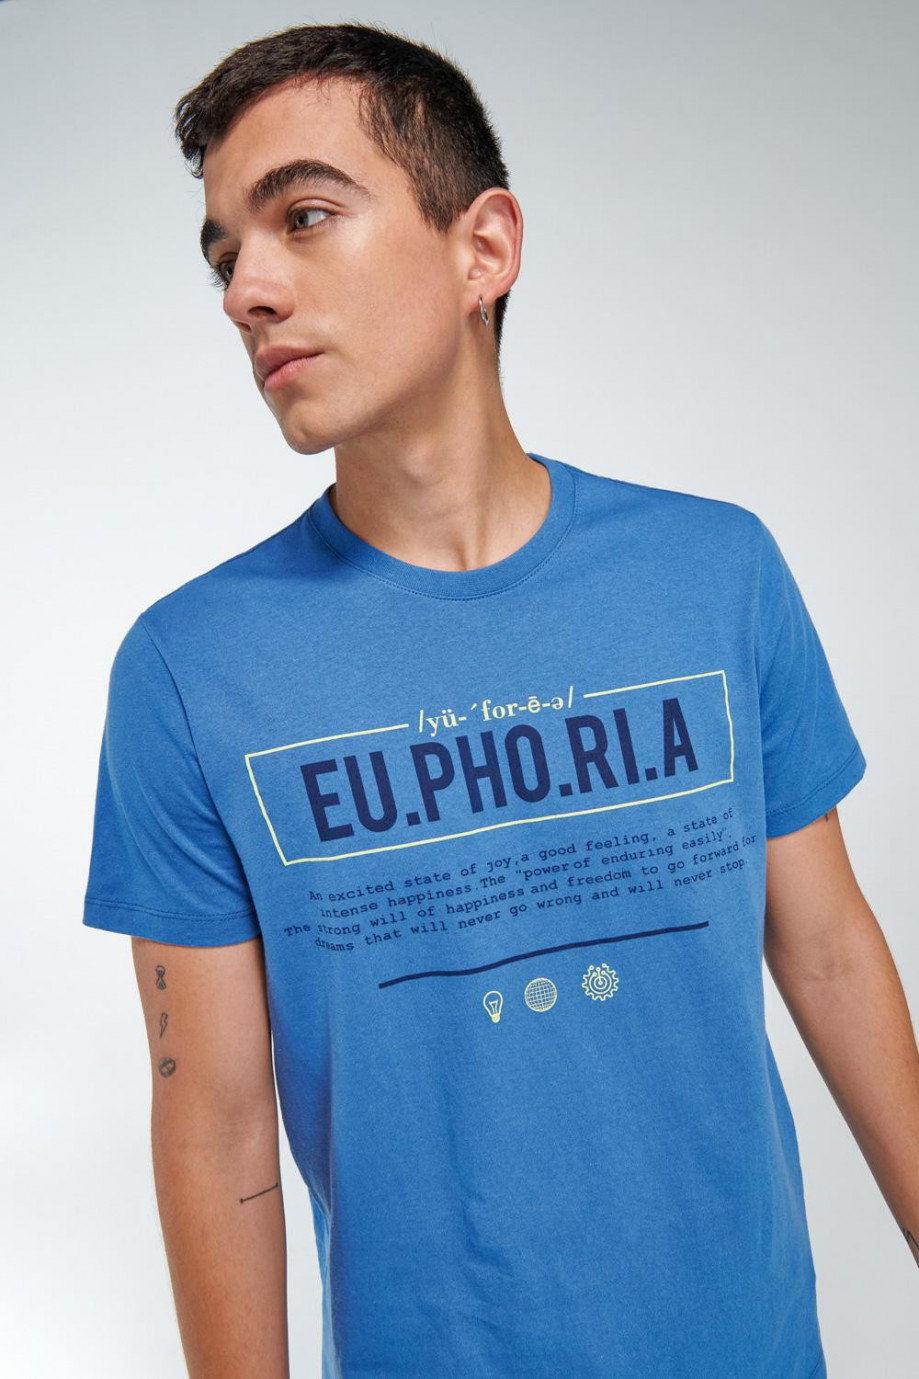 Camiseta unicolor con textos estampados y cuello redondo